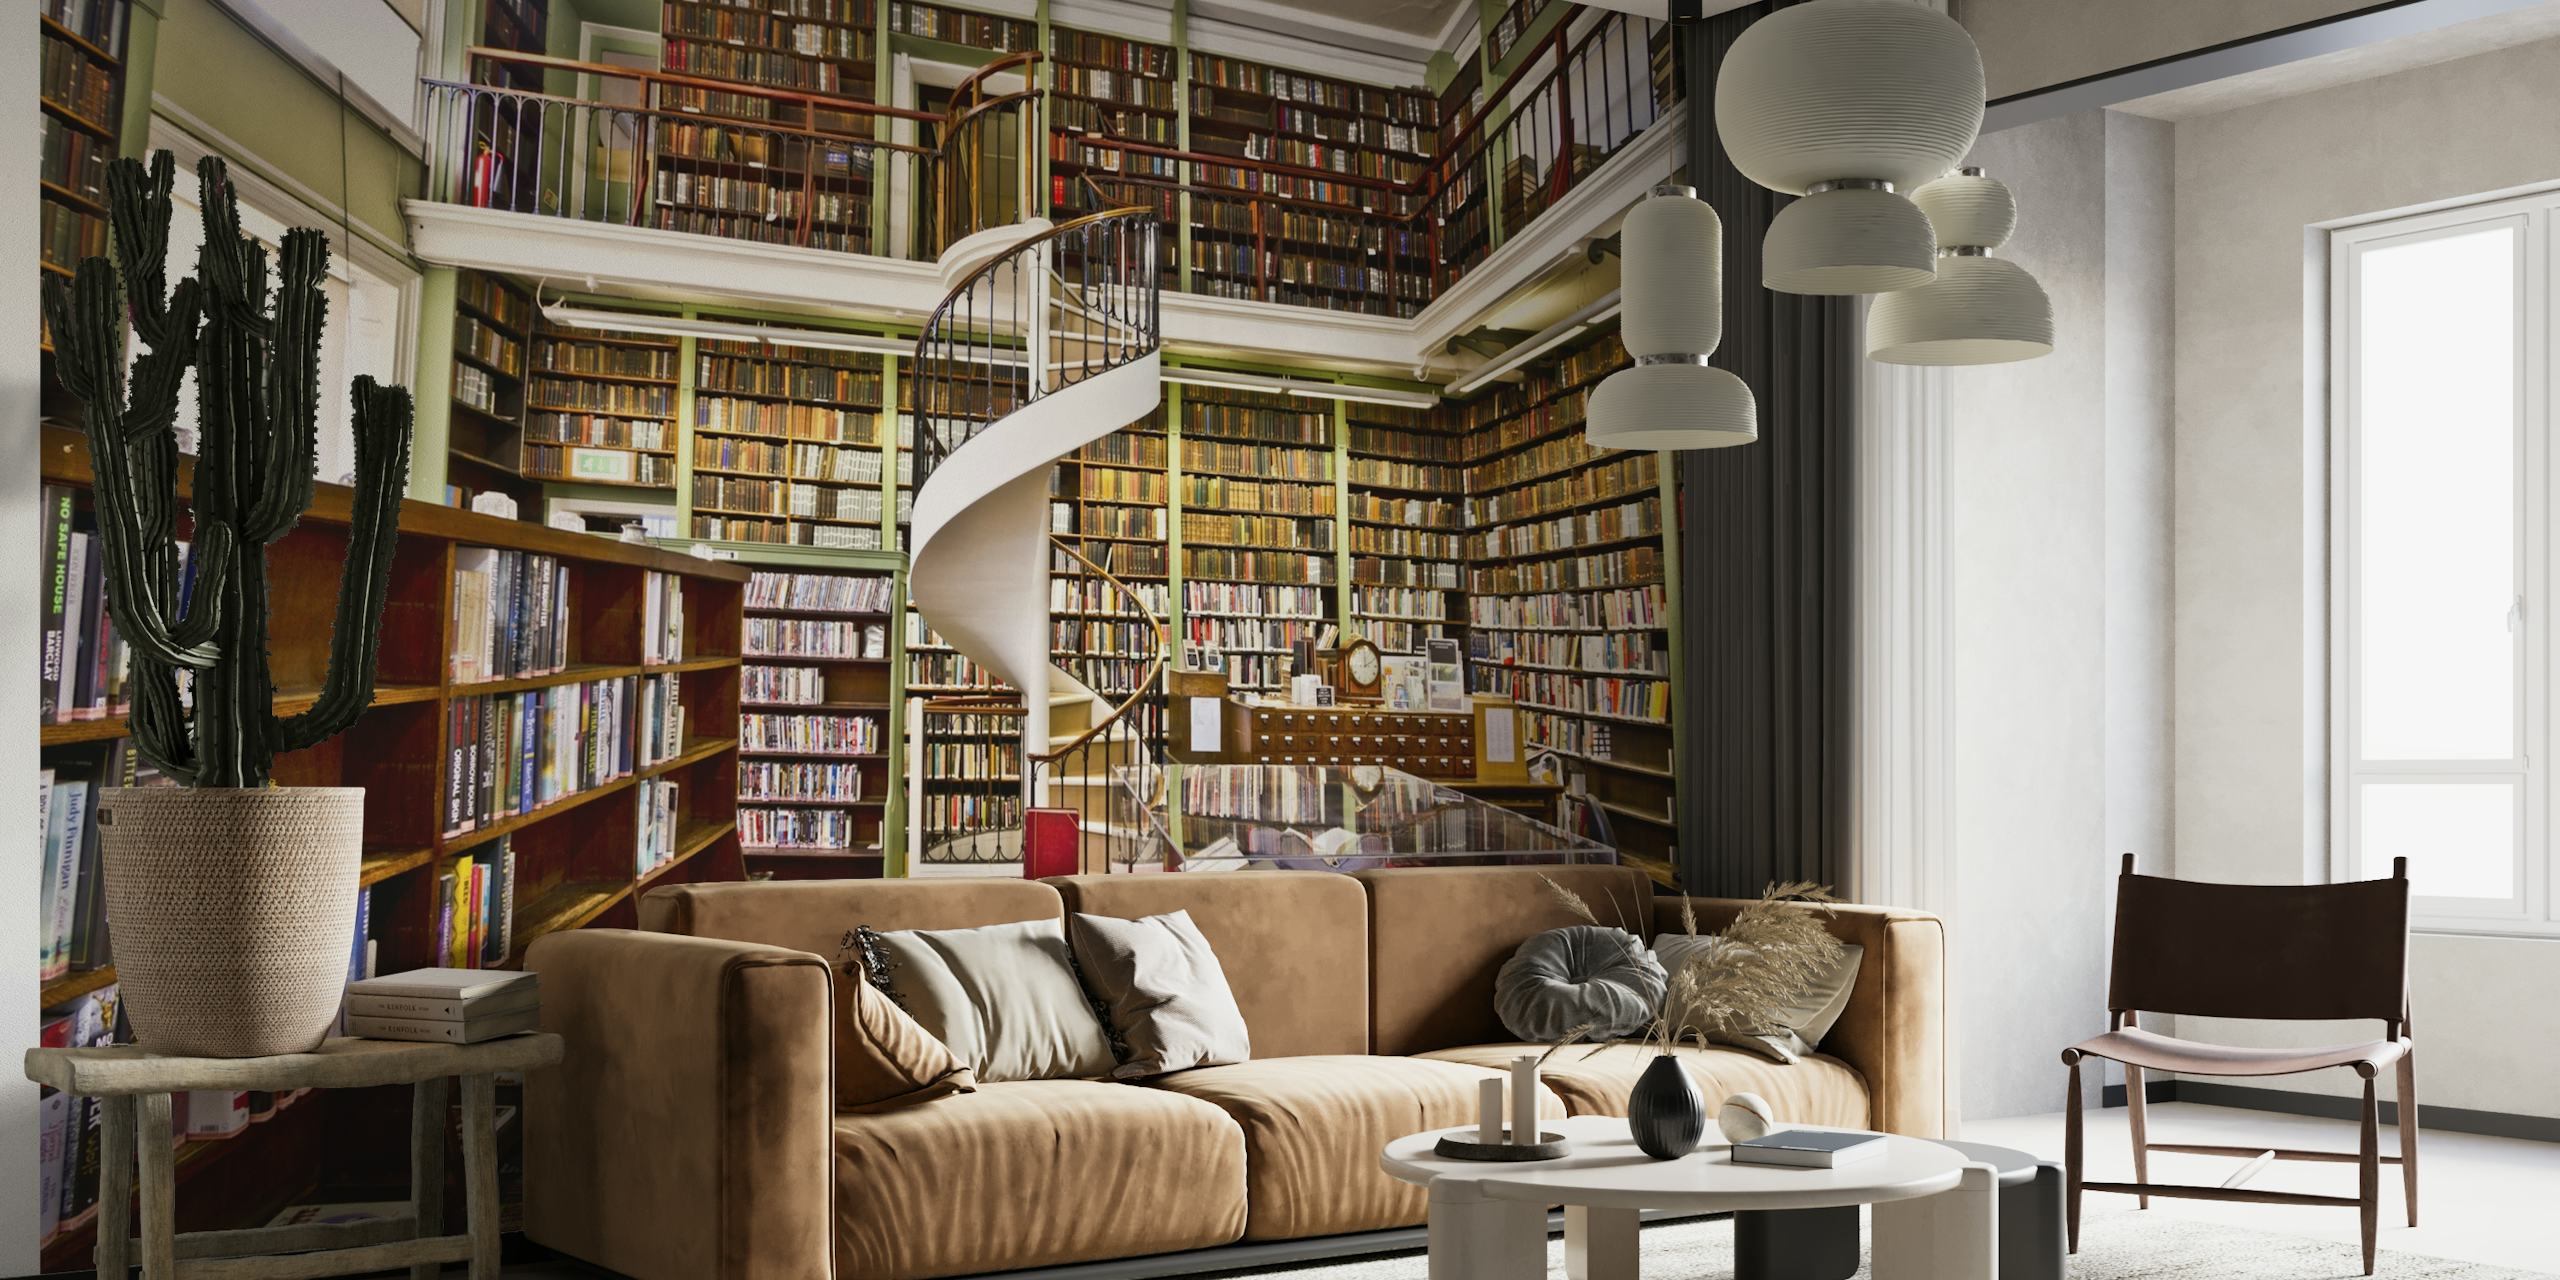 Fotomural de uma biblioteca aconchegante com estantes e uma escada em espiral